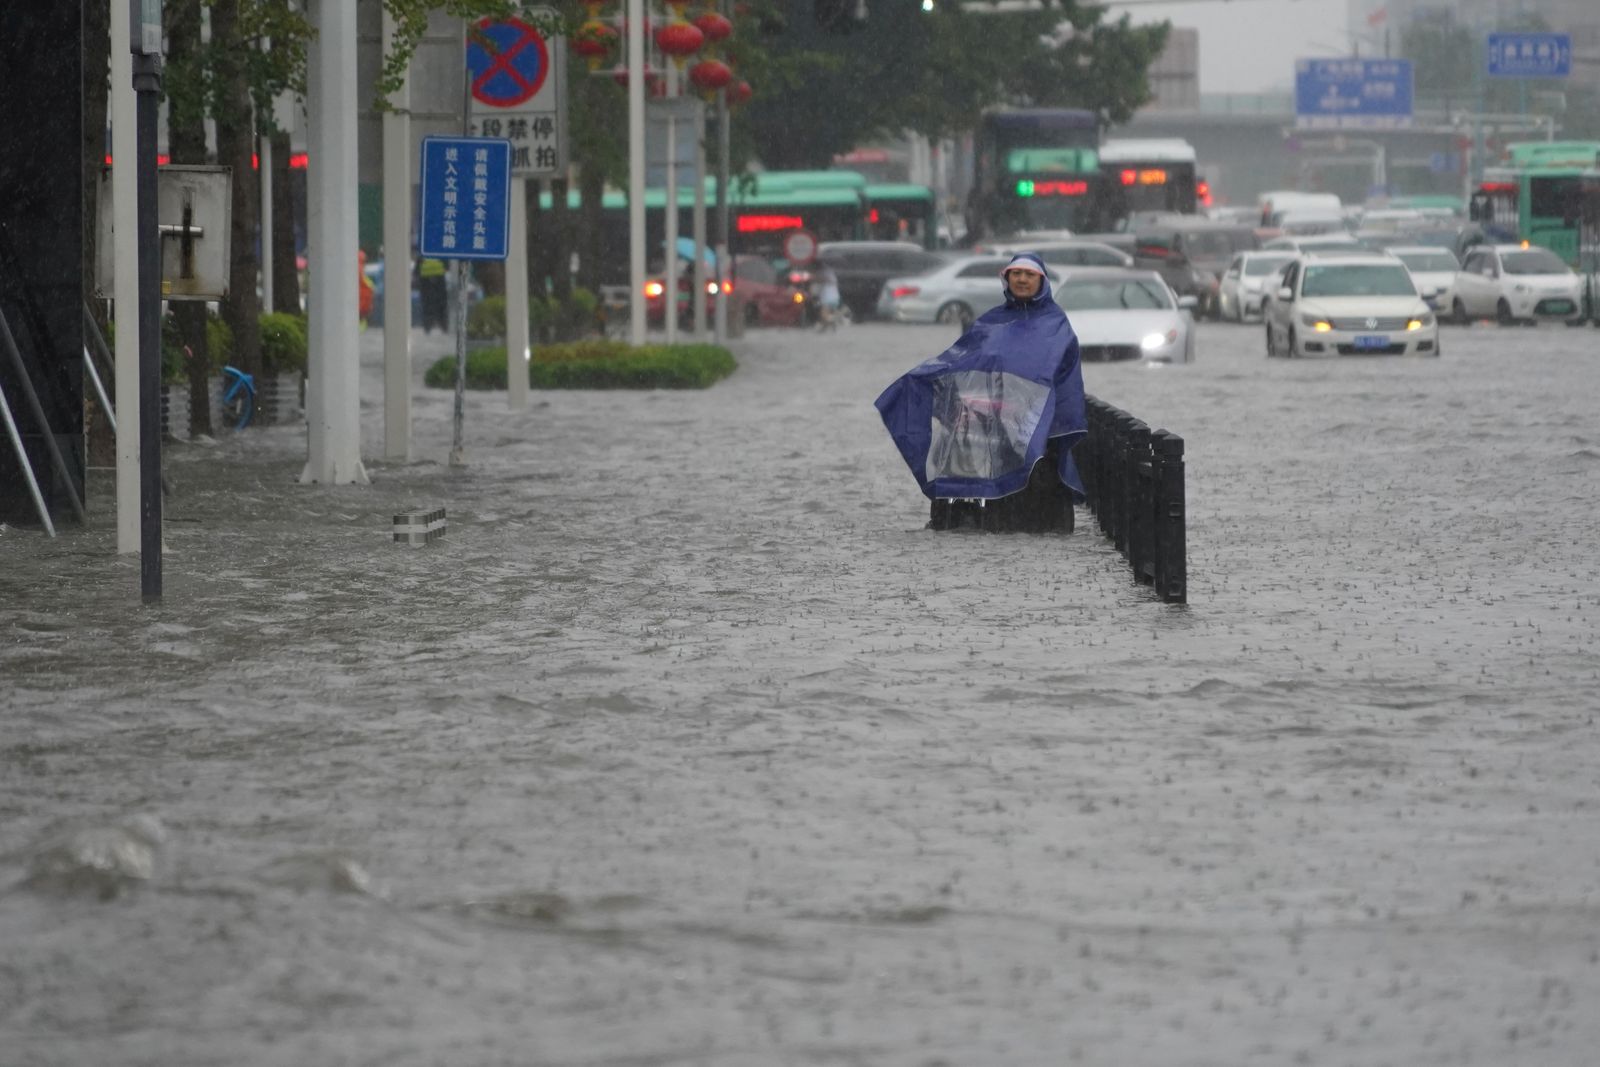 طريق غمرته المياه في مدينة تشنغتشو بإقليم خنان، الصين، 20 يوليو 2021 - VIA REUTERS